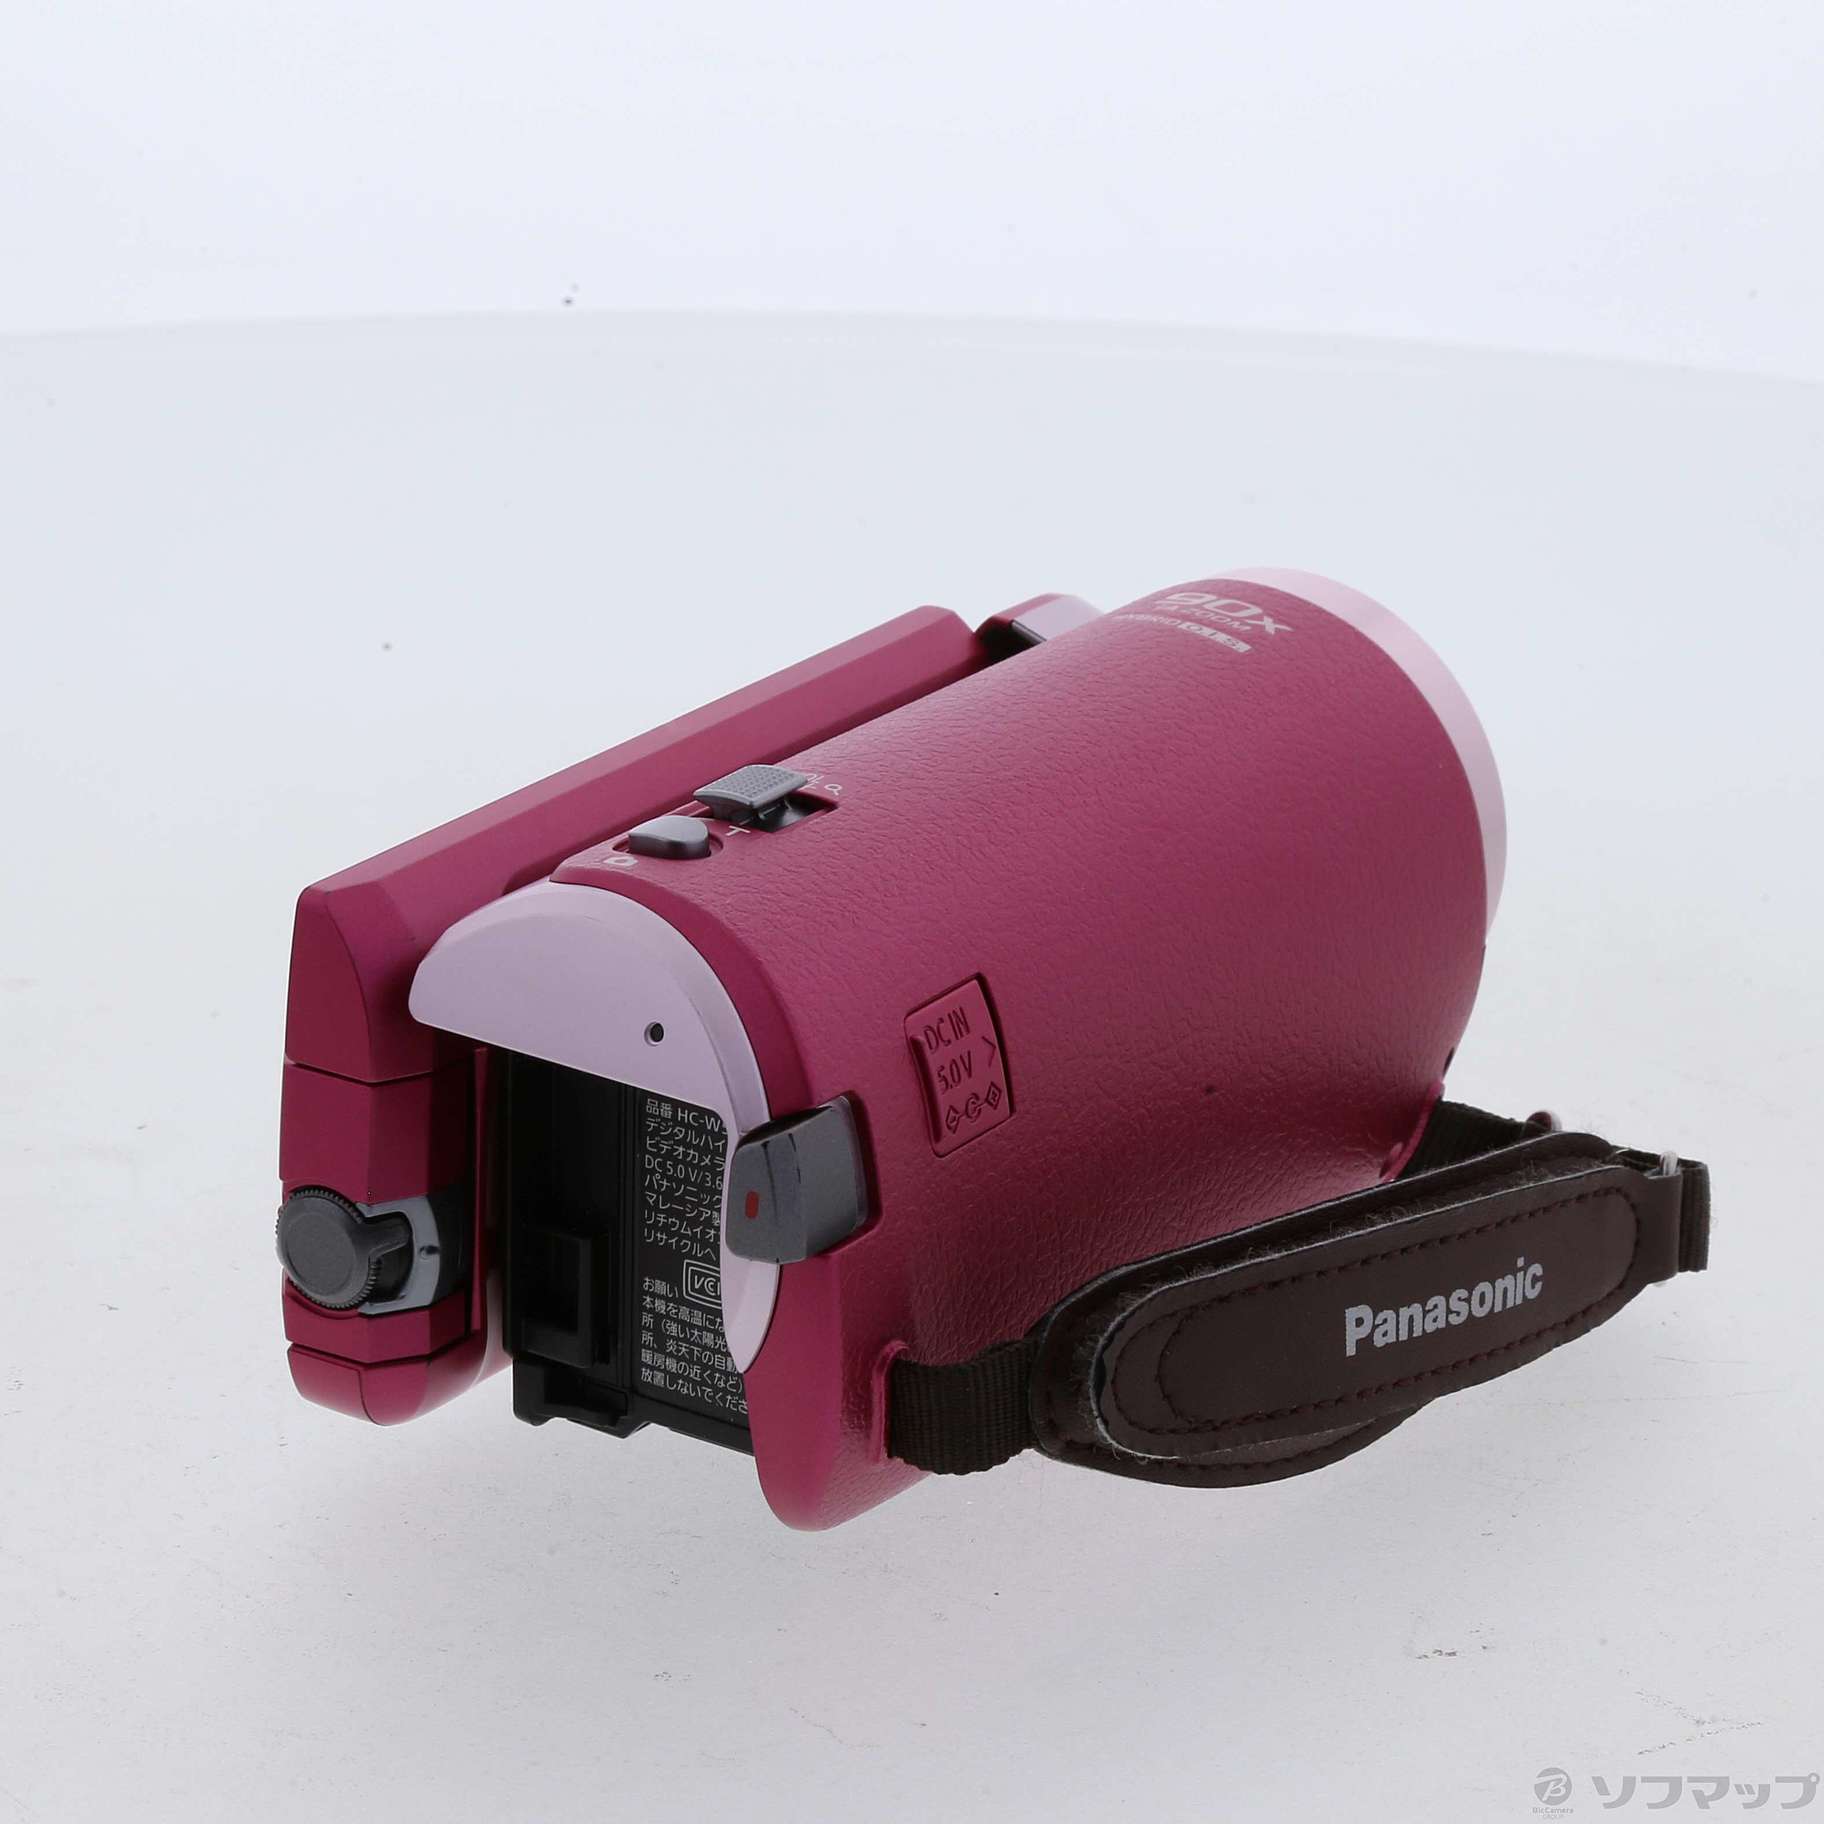 美品パナソニック HDビデオカメラ ピンク HC-W580M-P ワイプ付き 